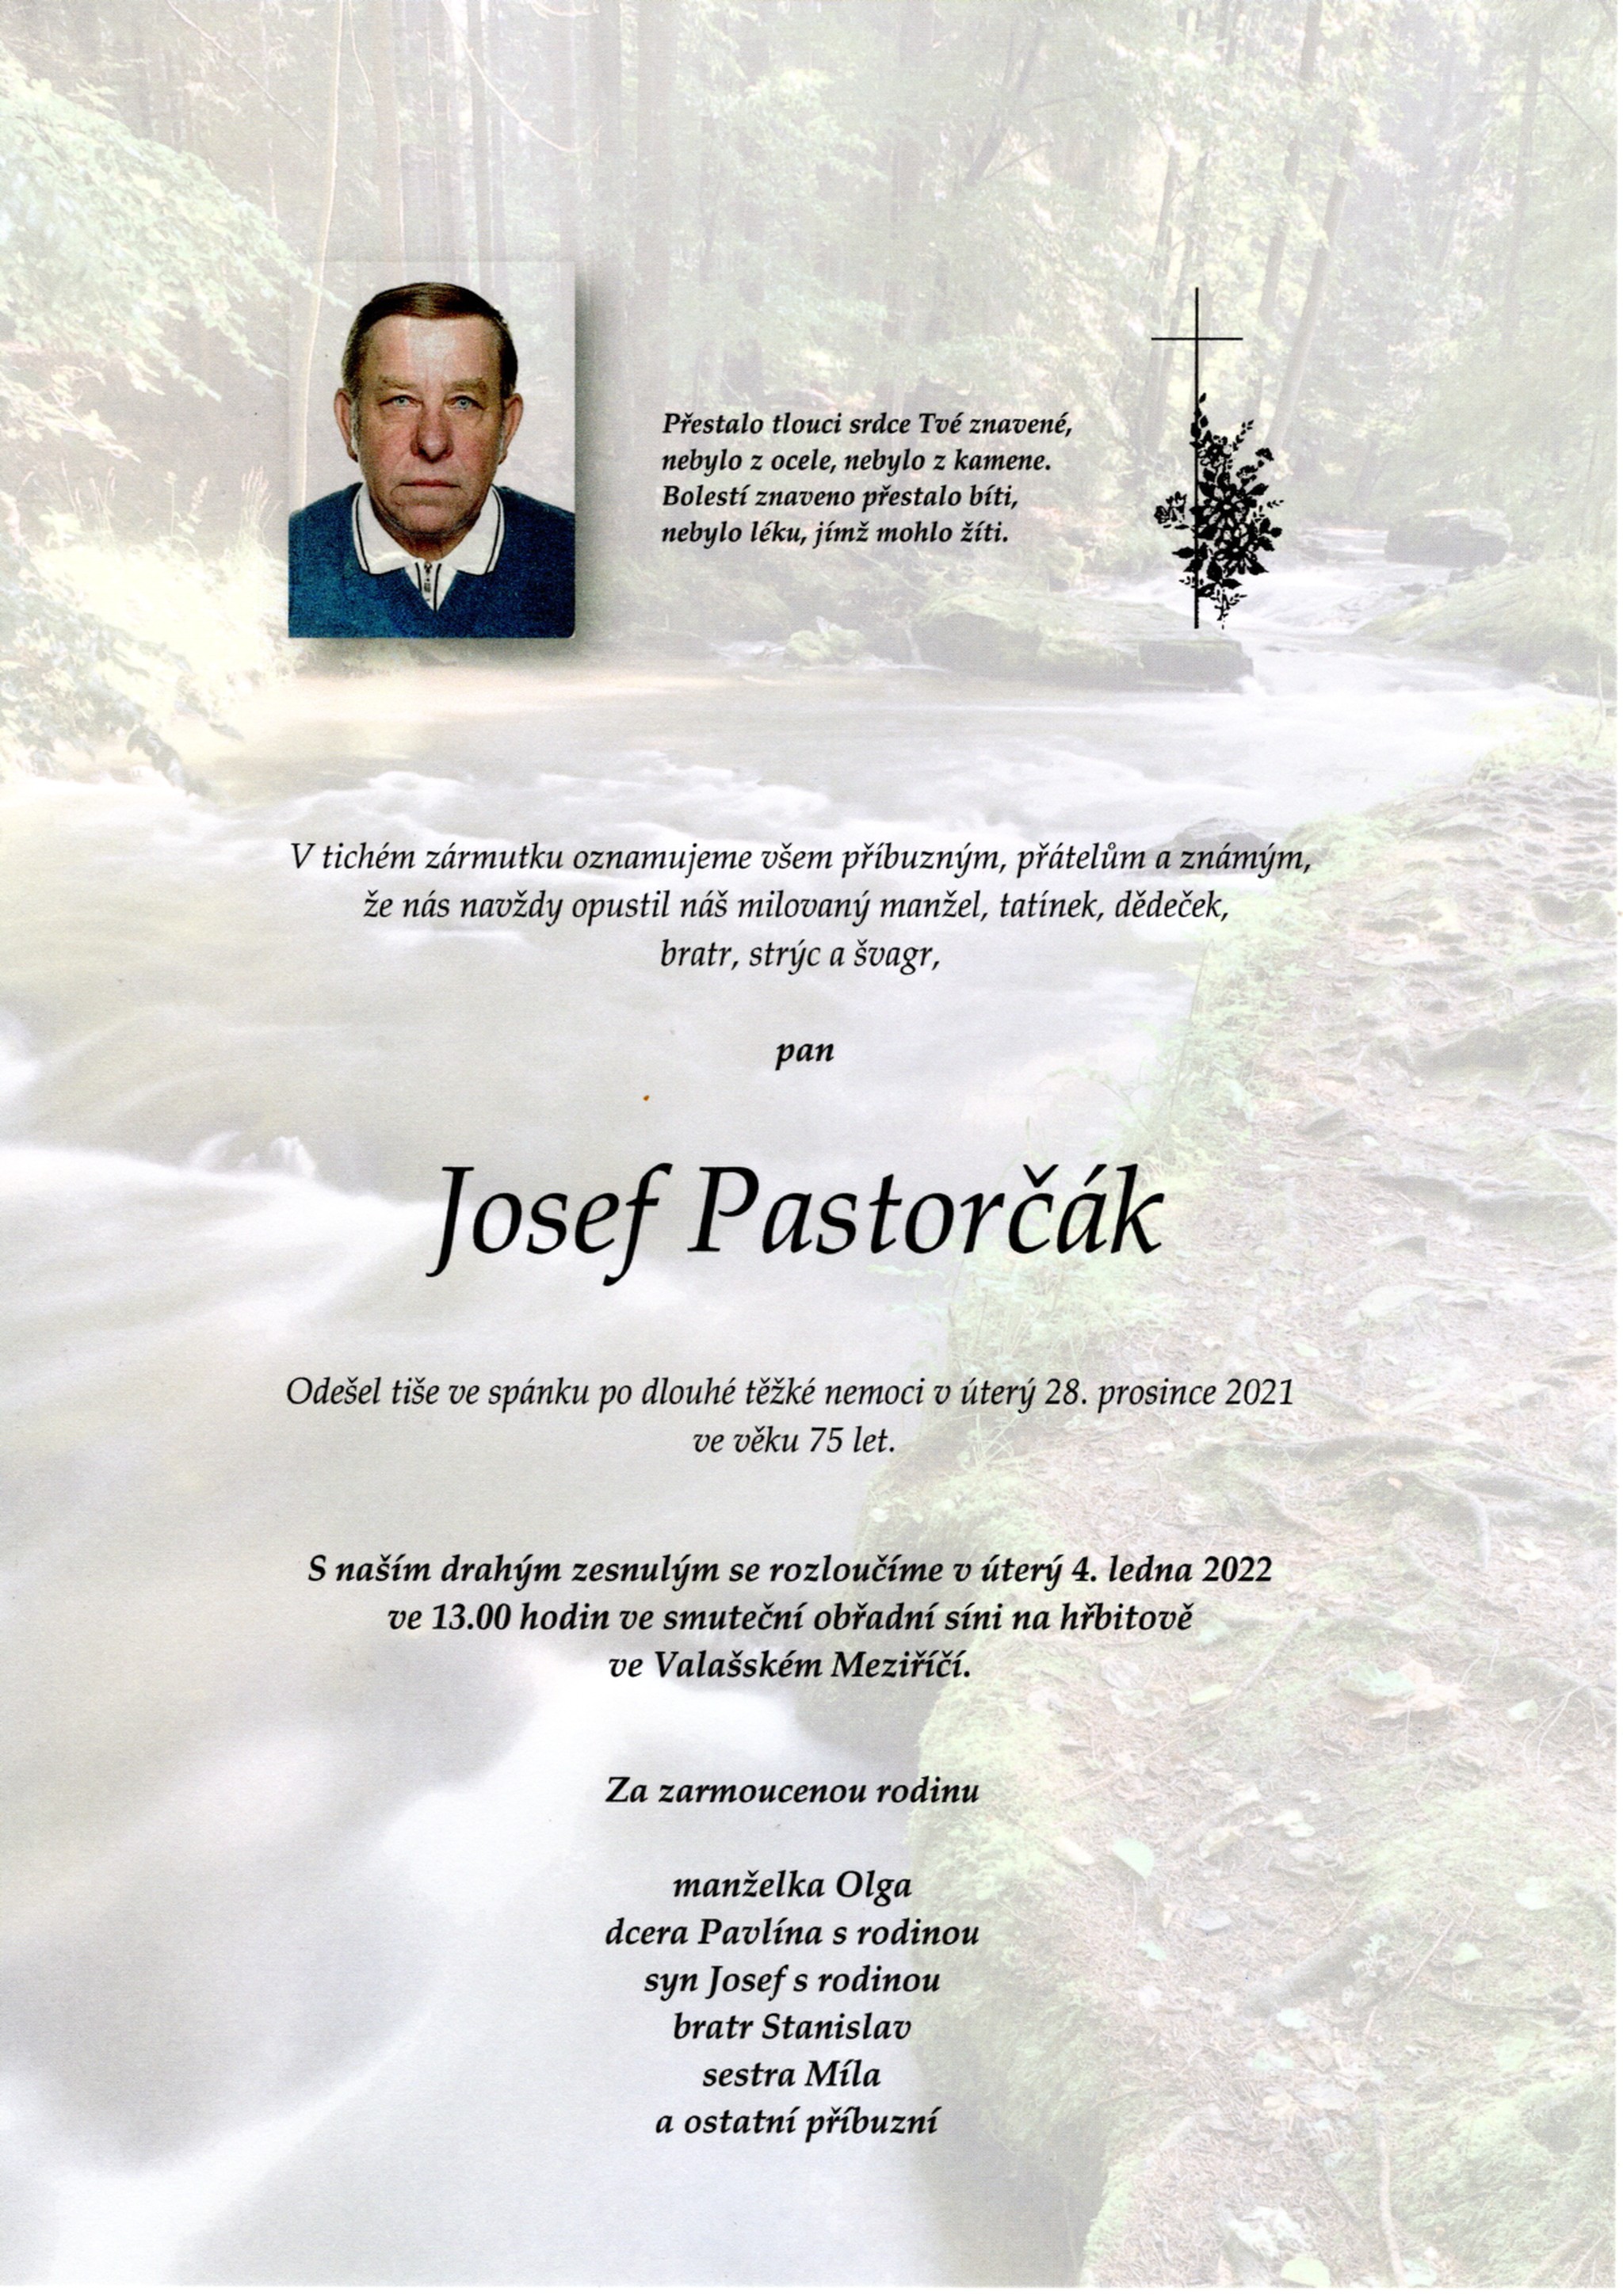 Josef Pastorčák